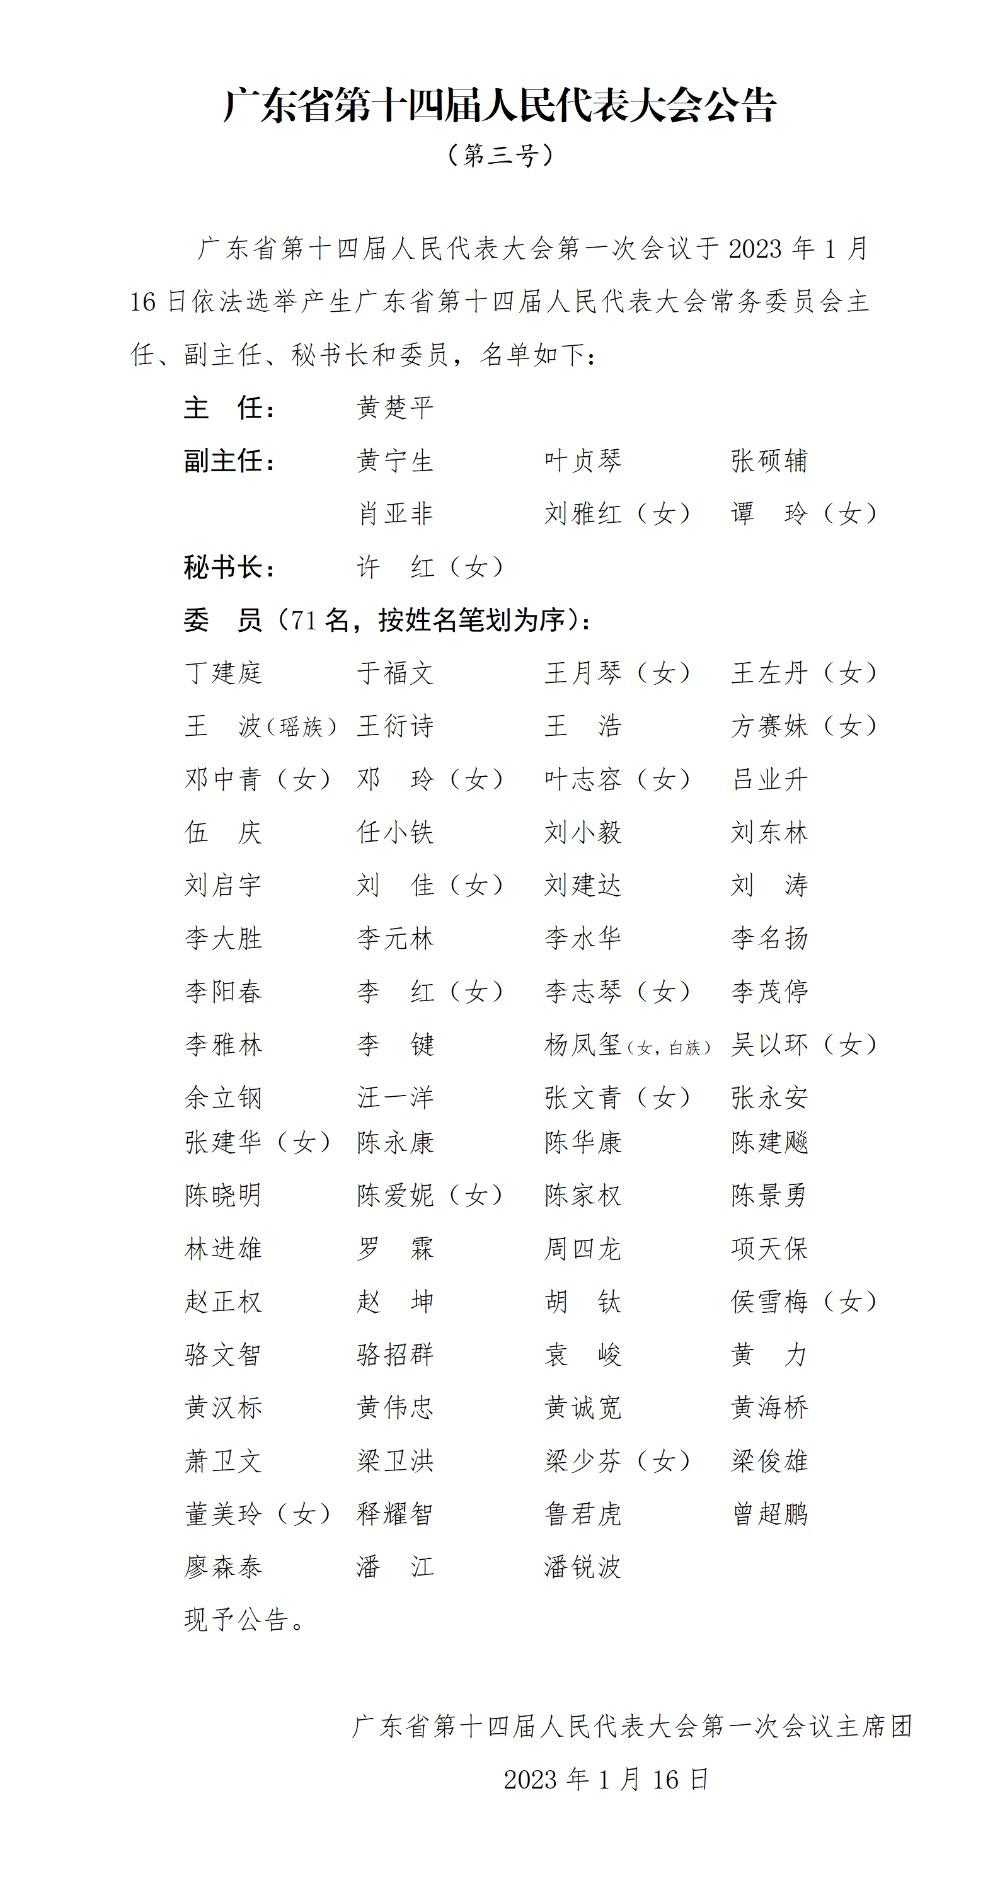 广东省第十四届人民代表大会常务委员会主任、副主任、秘书长和委员名单